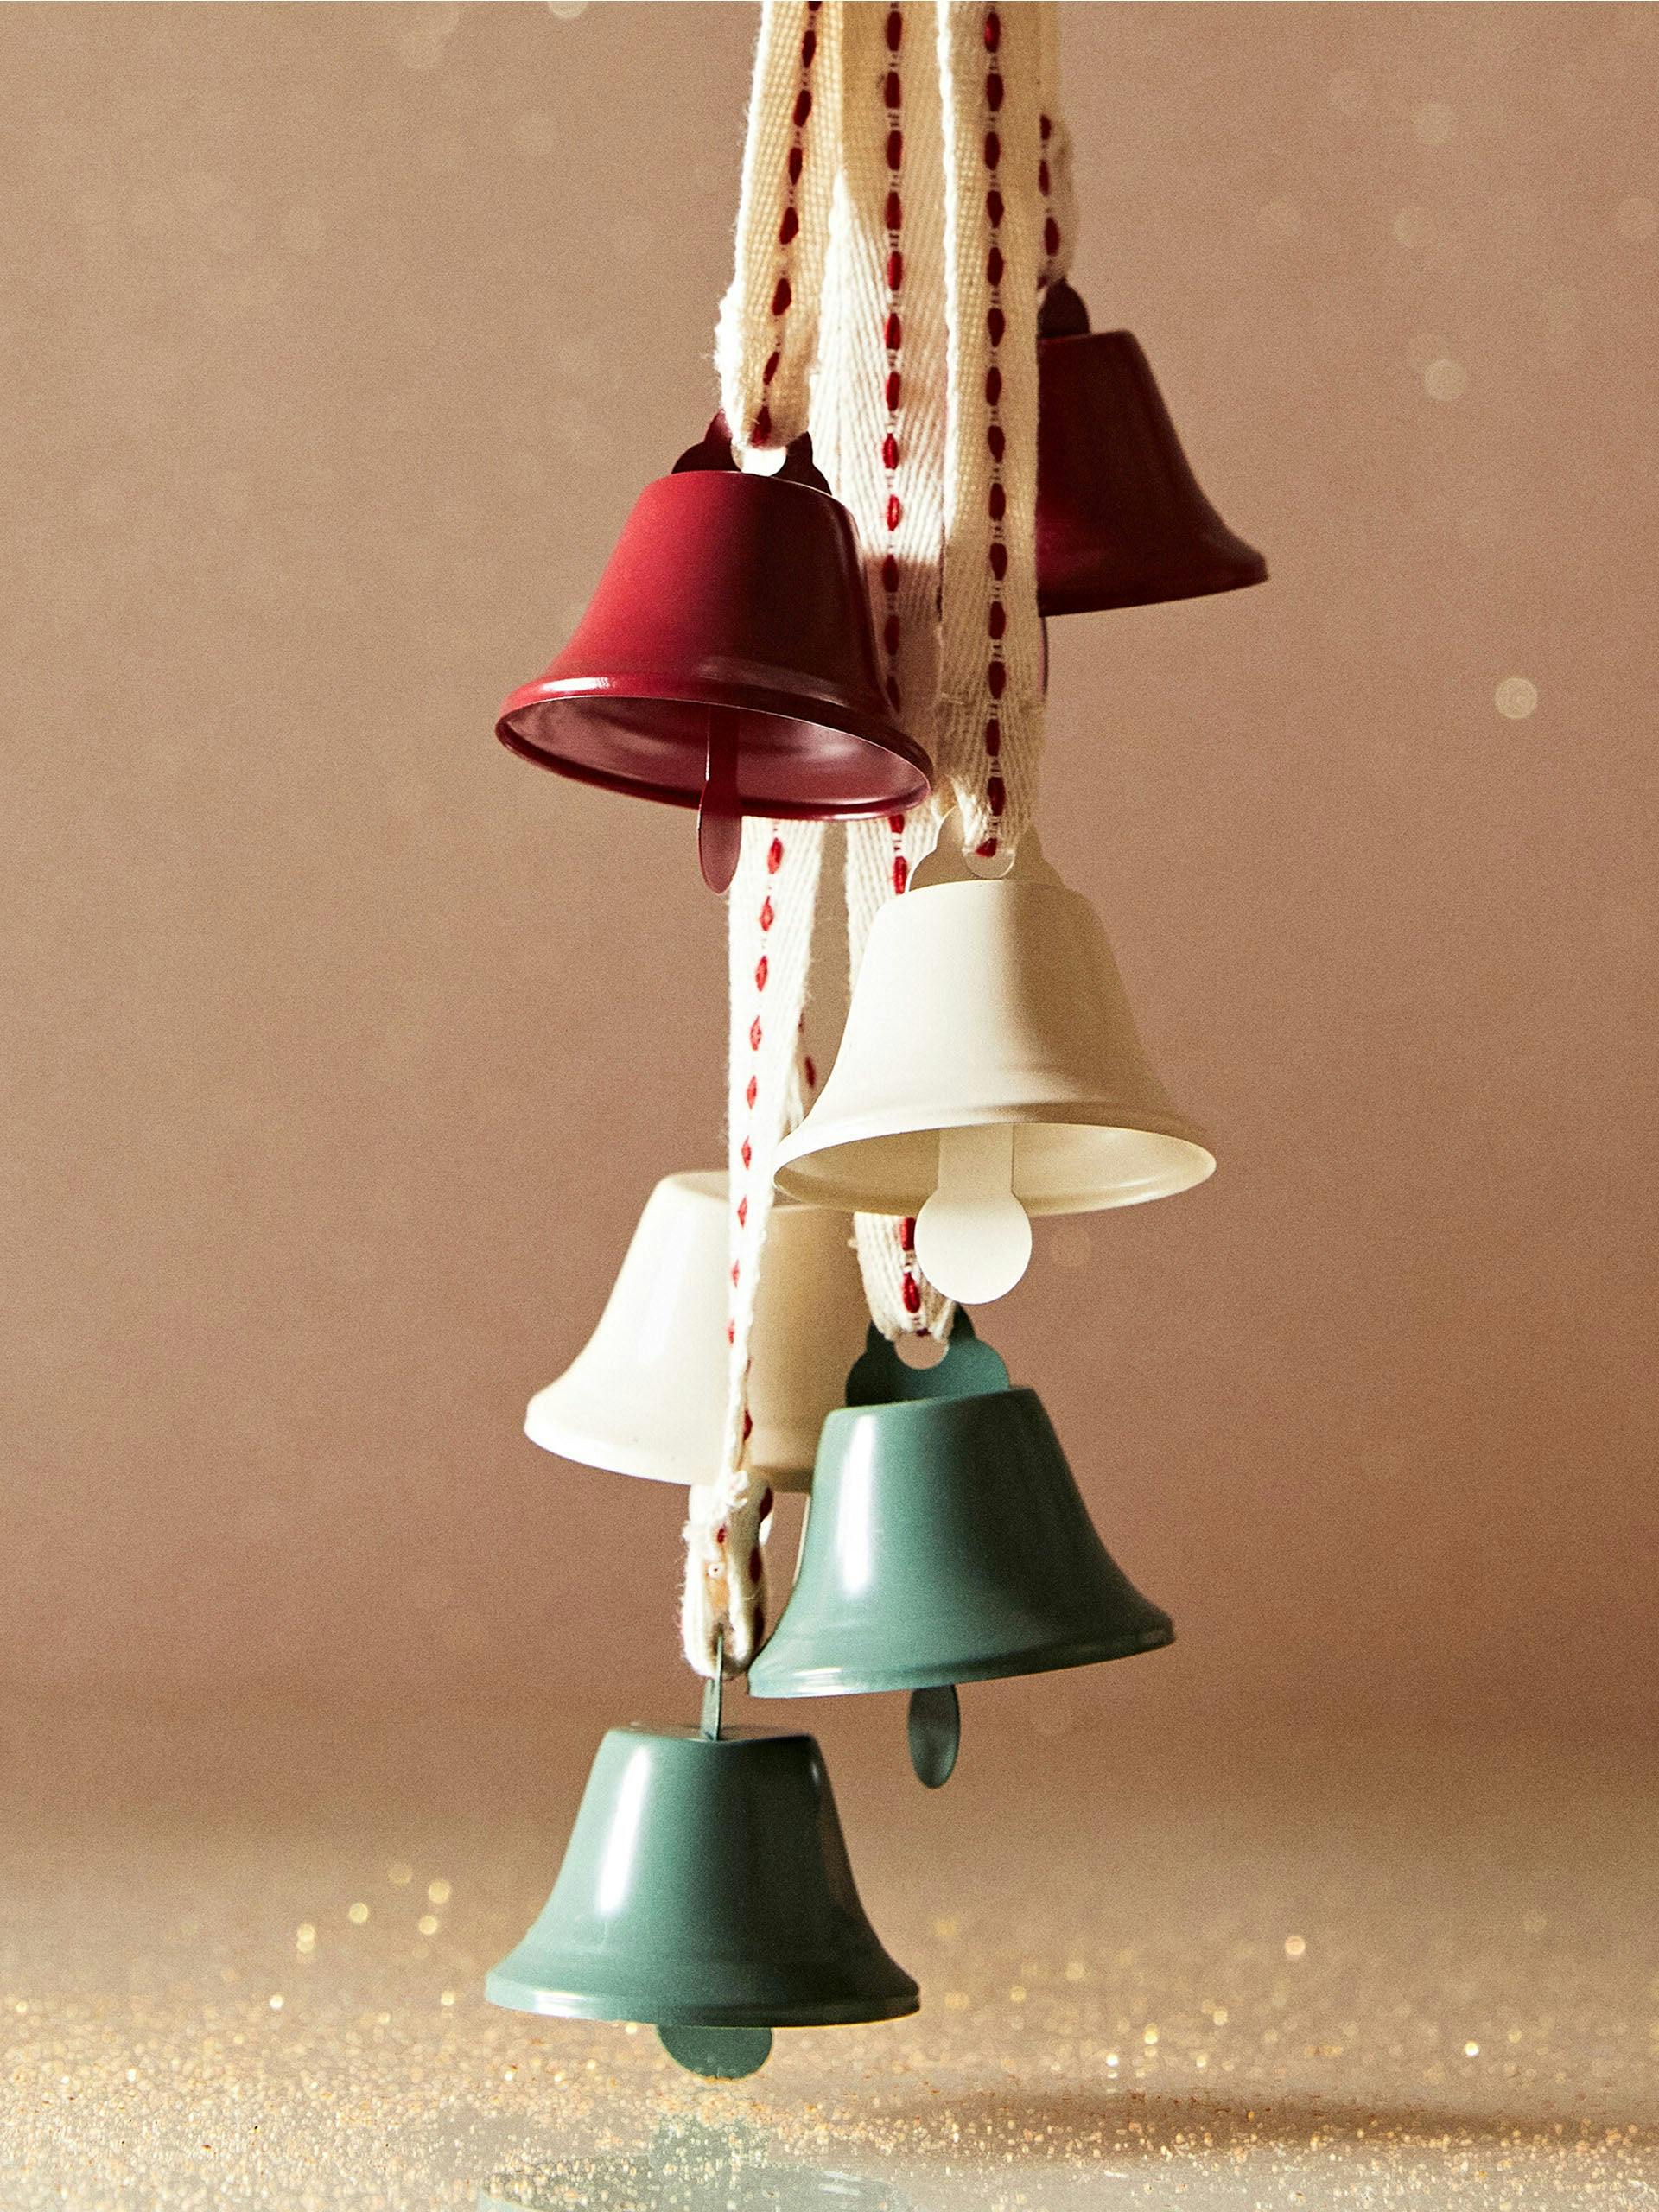 Decorative bells